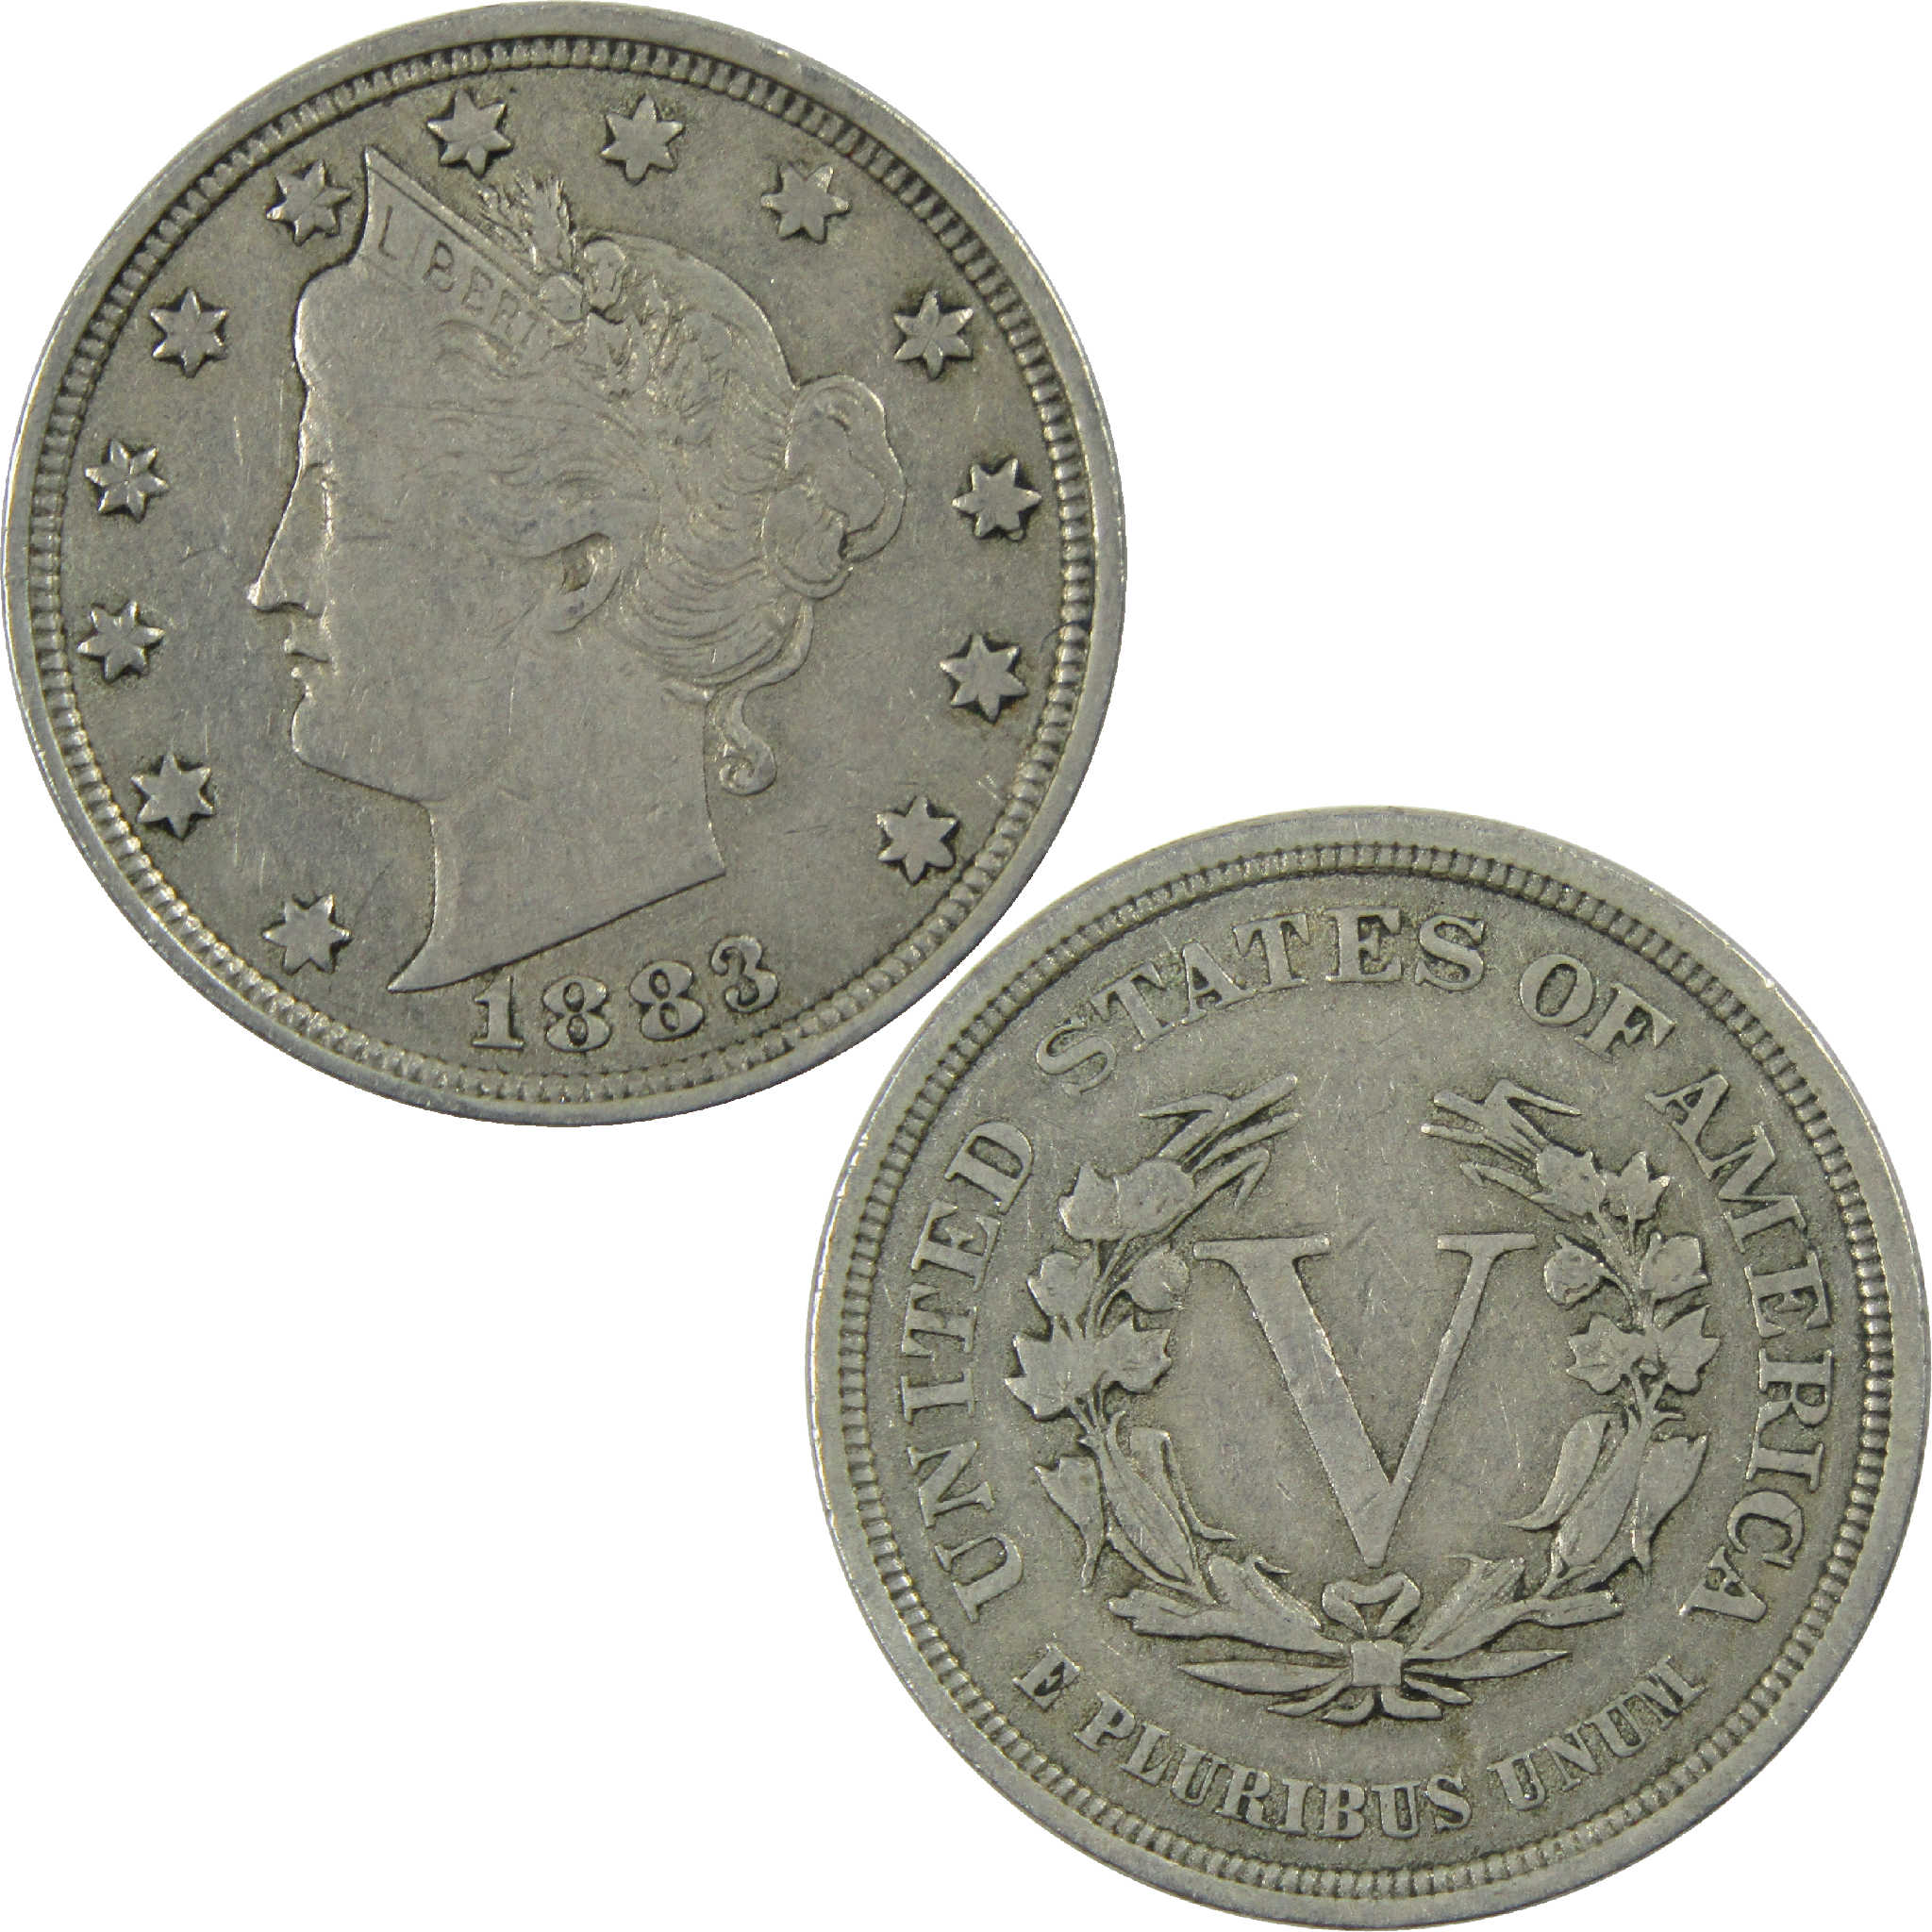 1883 No Cents Liberty Head V Nickel VF Very Fine 5c Coin SKU:I12164